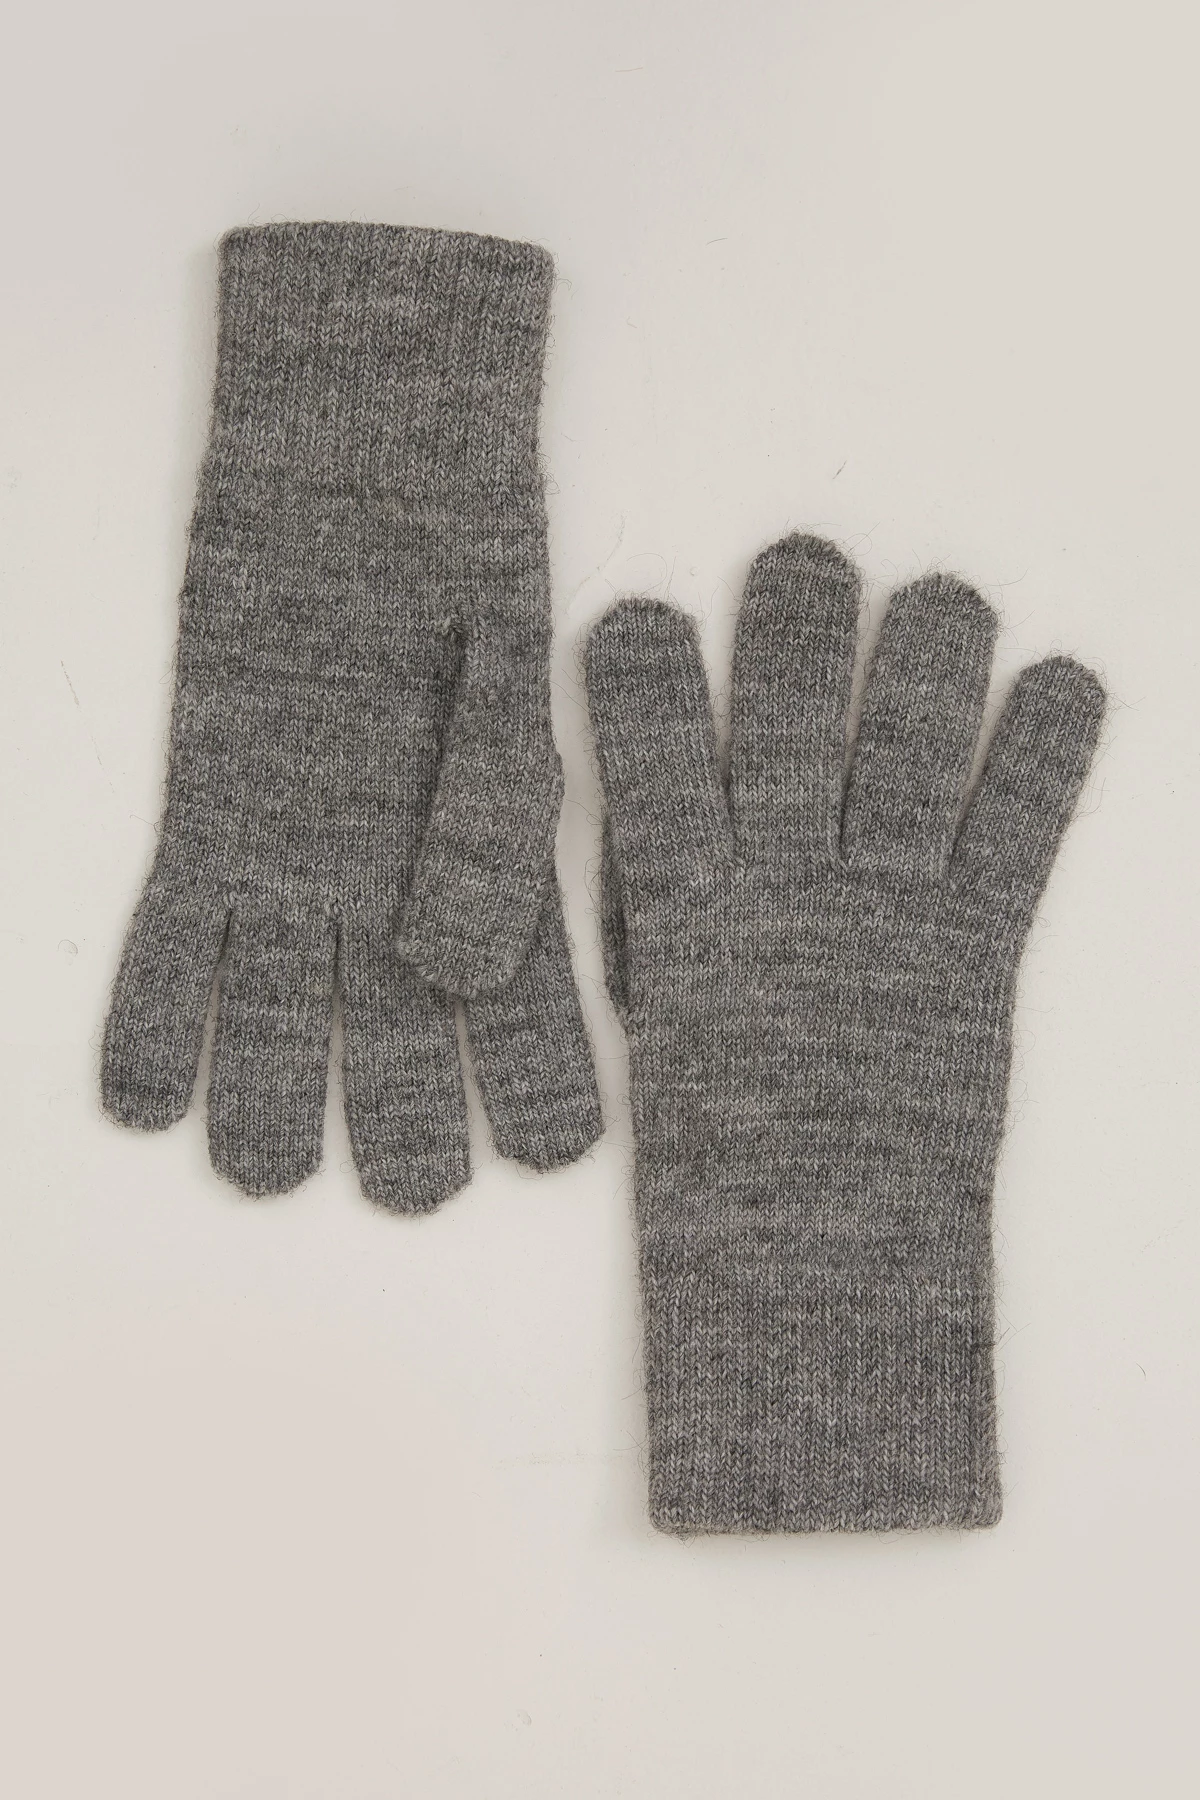 Knitted woolen grey gloves, photo 1